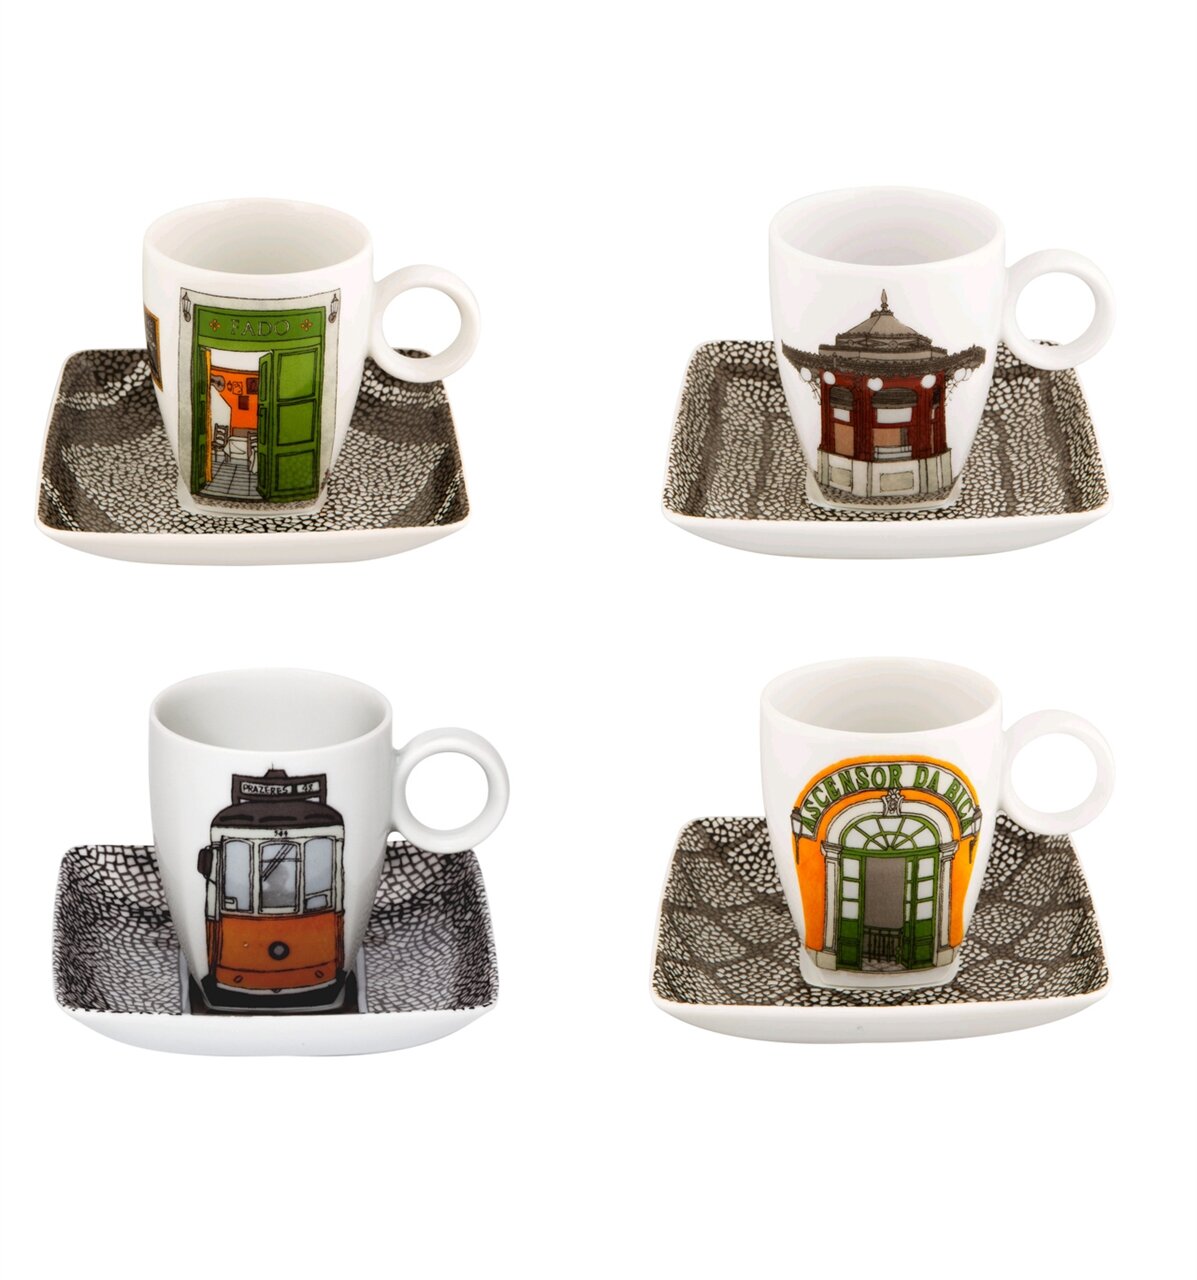 https://assets.wfcdn.com/im/35281238/compr-r85/1471/14710410/alma-de-lisboa-porcelain-china-coffee-mug-set.jpg